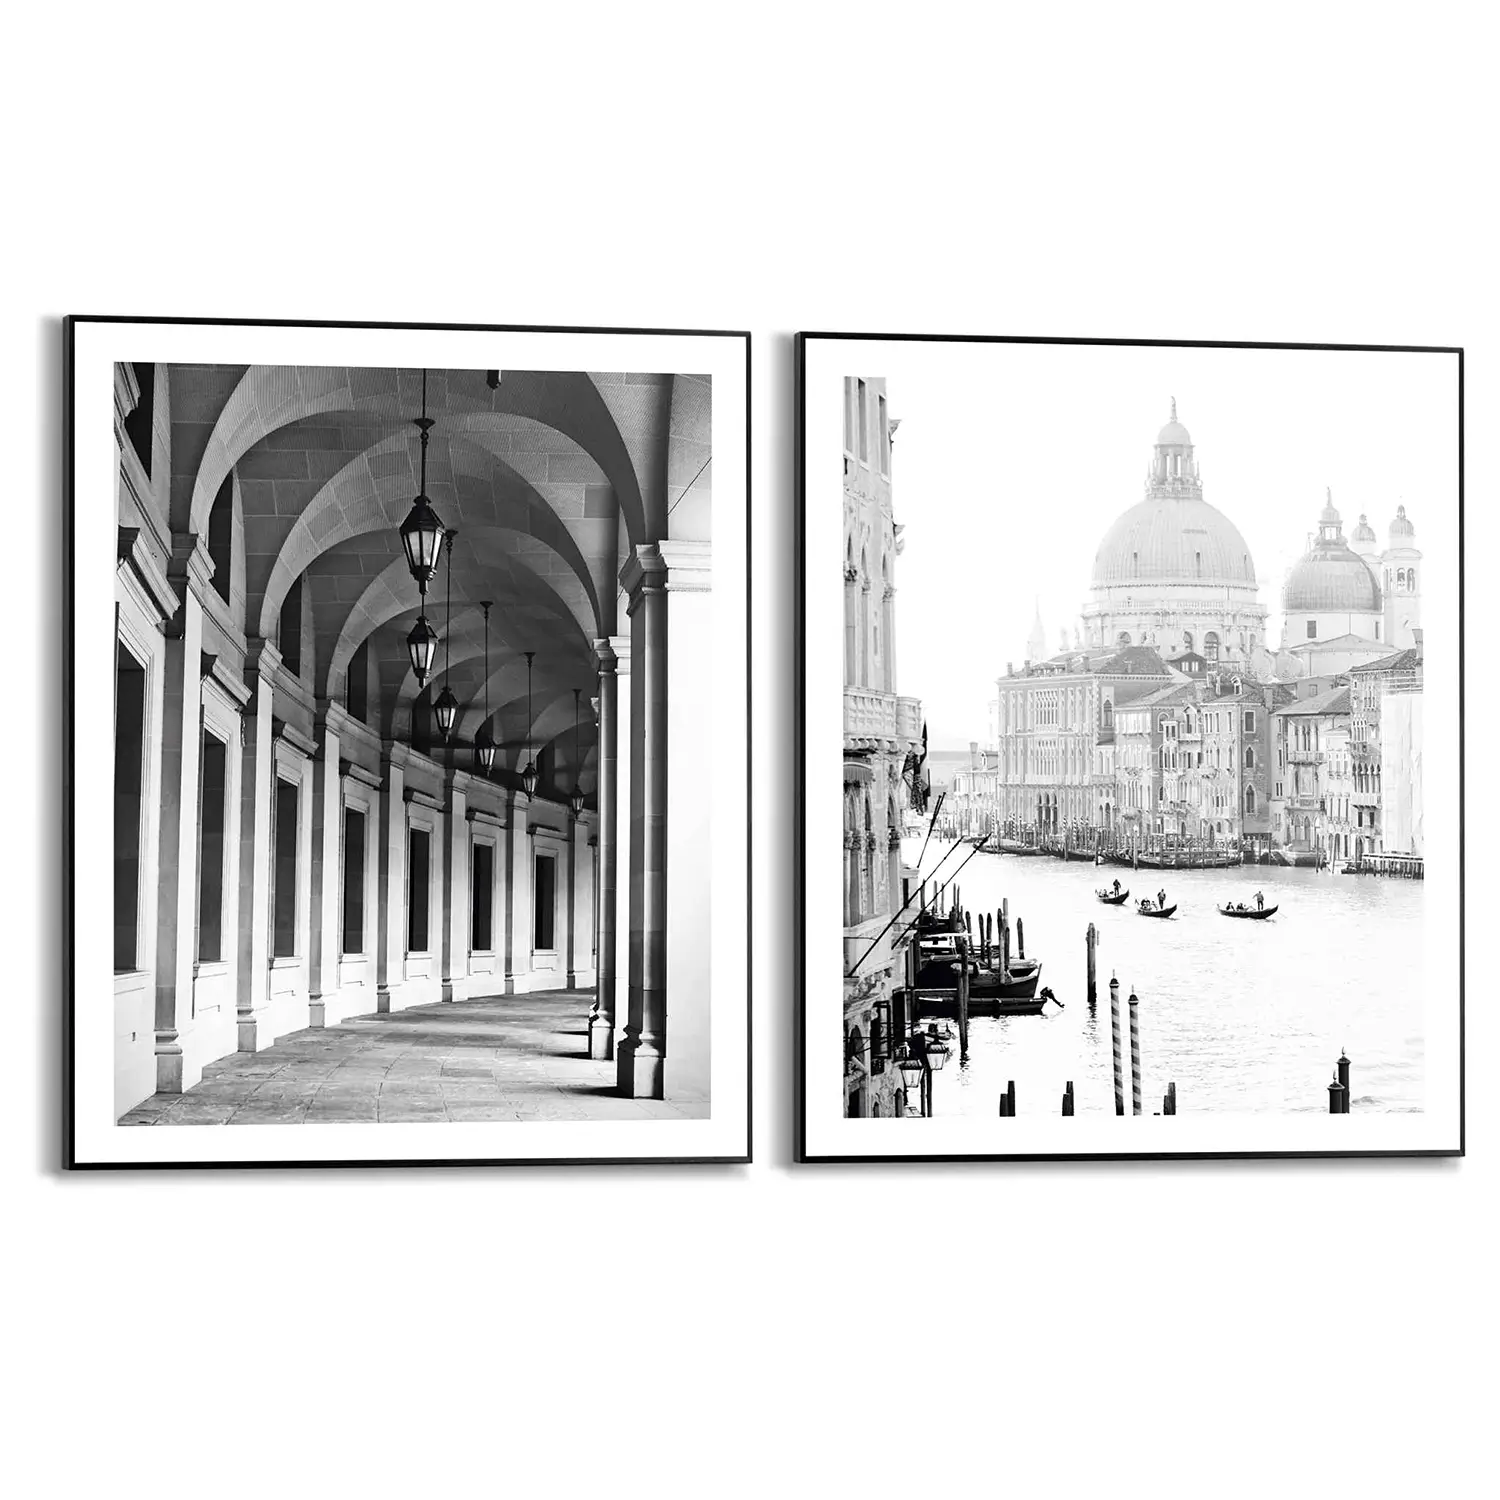 Wandbilder Set Reisen Venedig (2-tlg.)